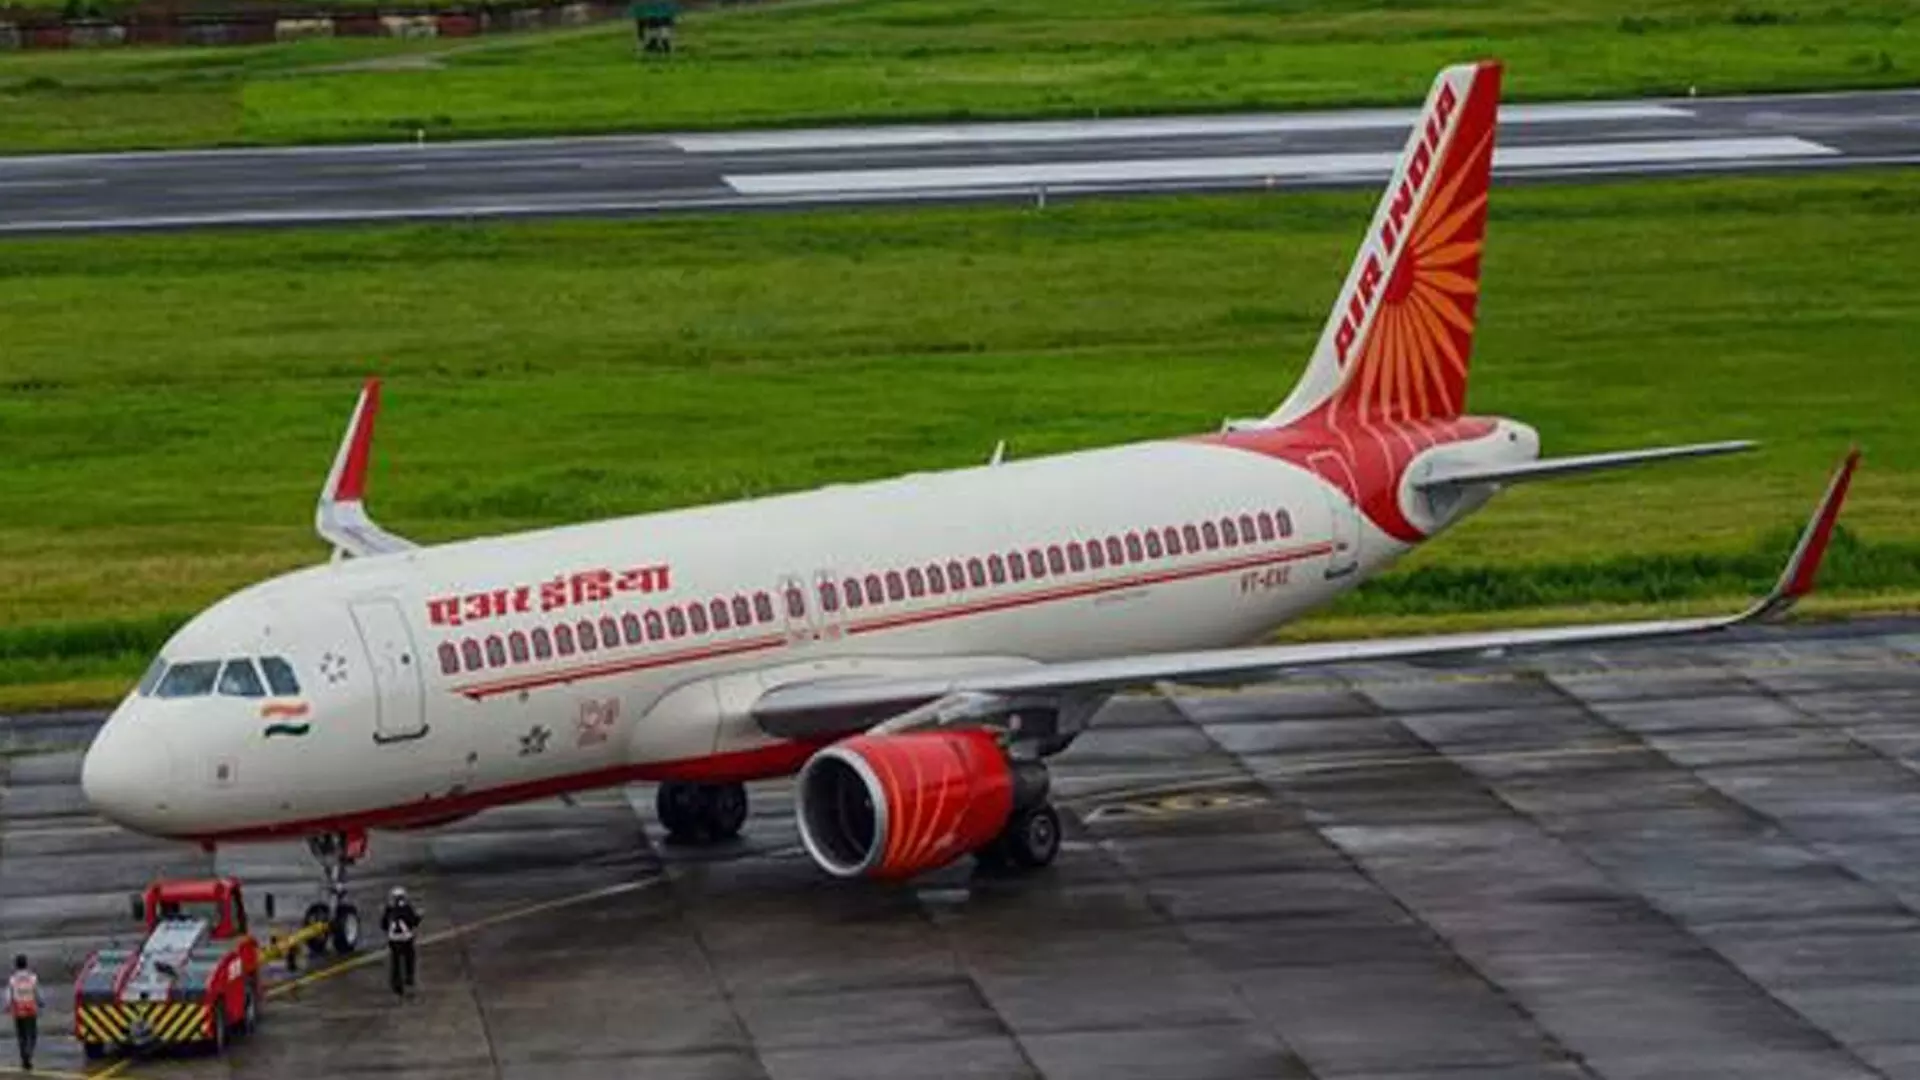 एयर कंडीशनिंग यूनिट में आग लगने के बाद बेंगलुरु जा रहा एयर इंडिया का विमान दिल्ली लौट आया